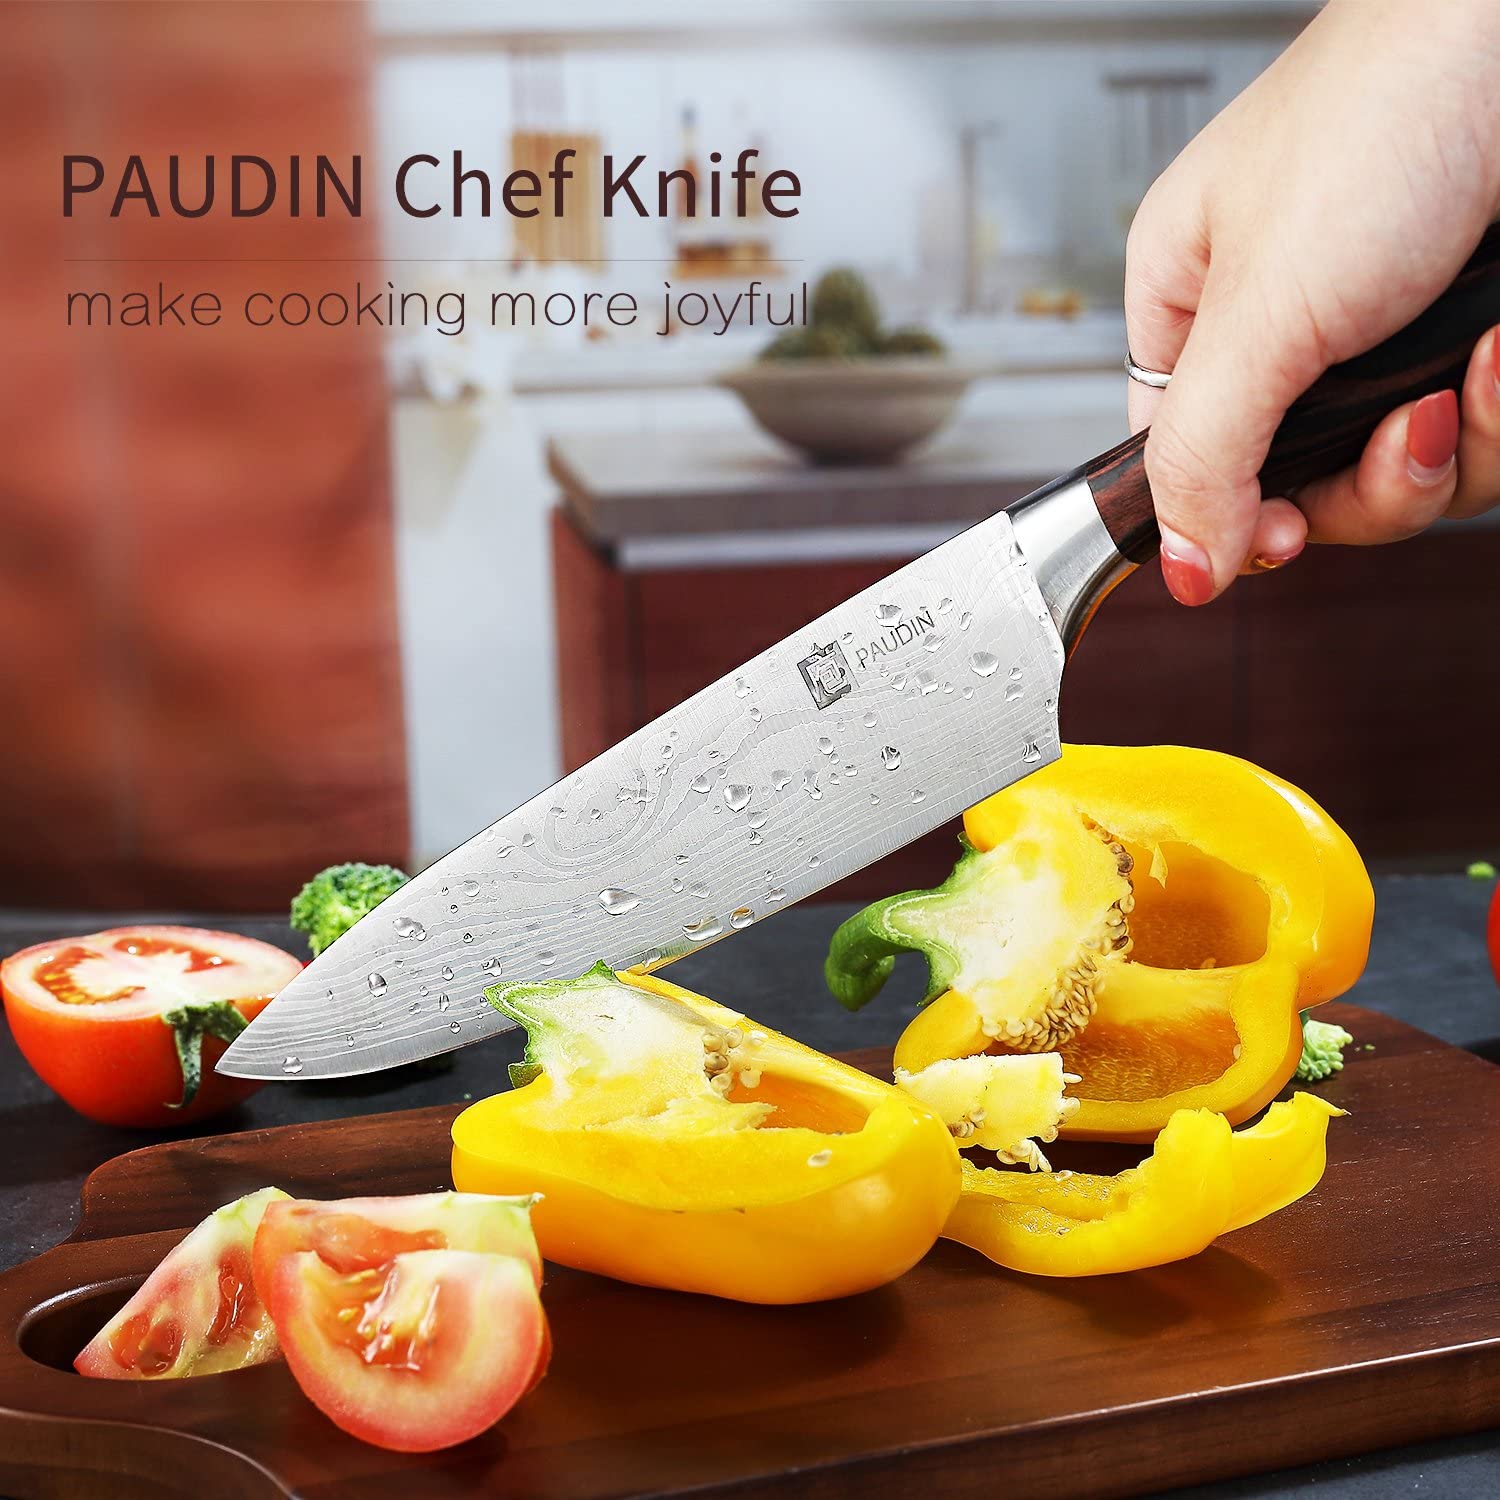 PAUDIN 직업적인 부엌 칼 8 인치 요리사의 칼 N1 독일 식 고 탄소 스테인리스 칼 인간 환경 공학 손잡이, 매우 날가로운 것, 가정 부엌과 대중 음식점을위한 제일 선택